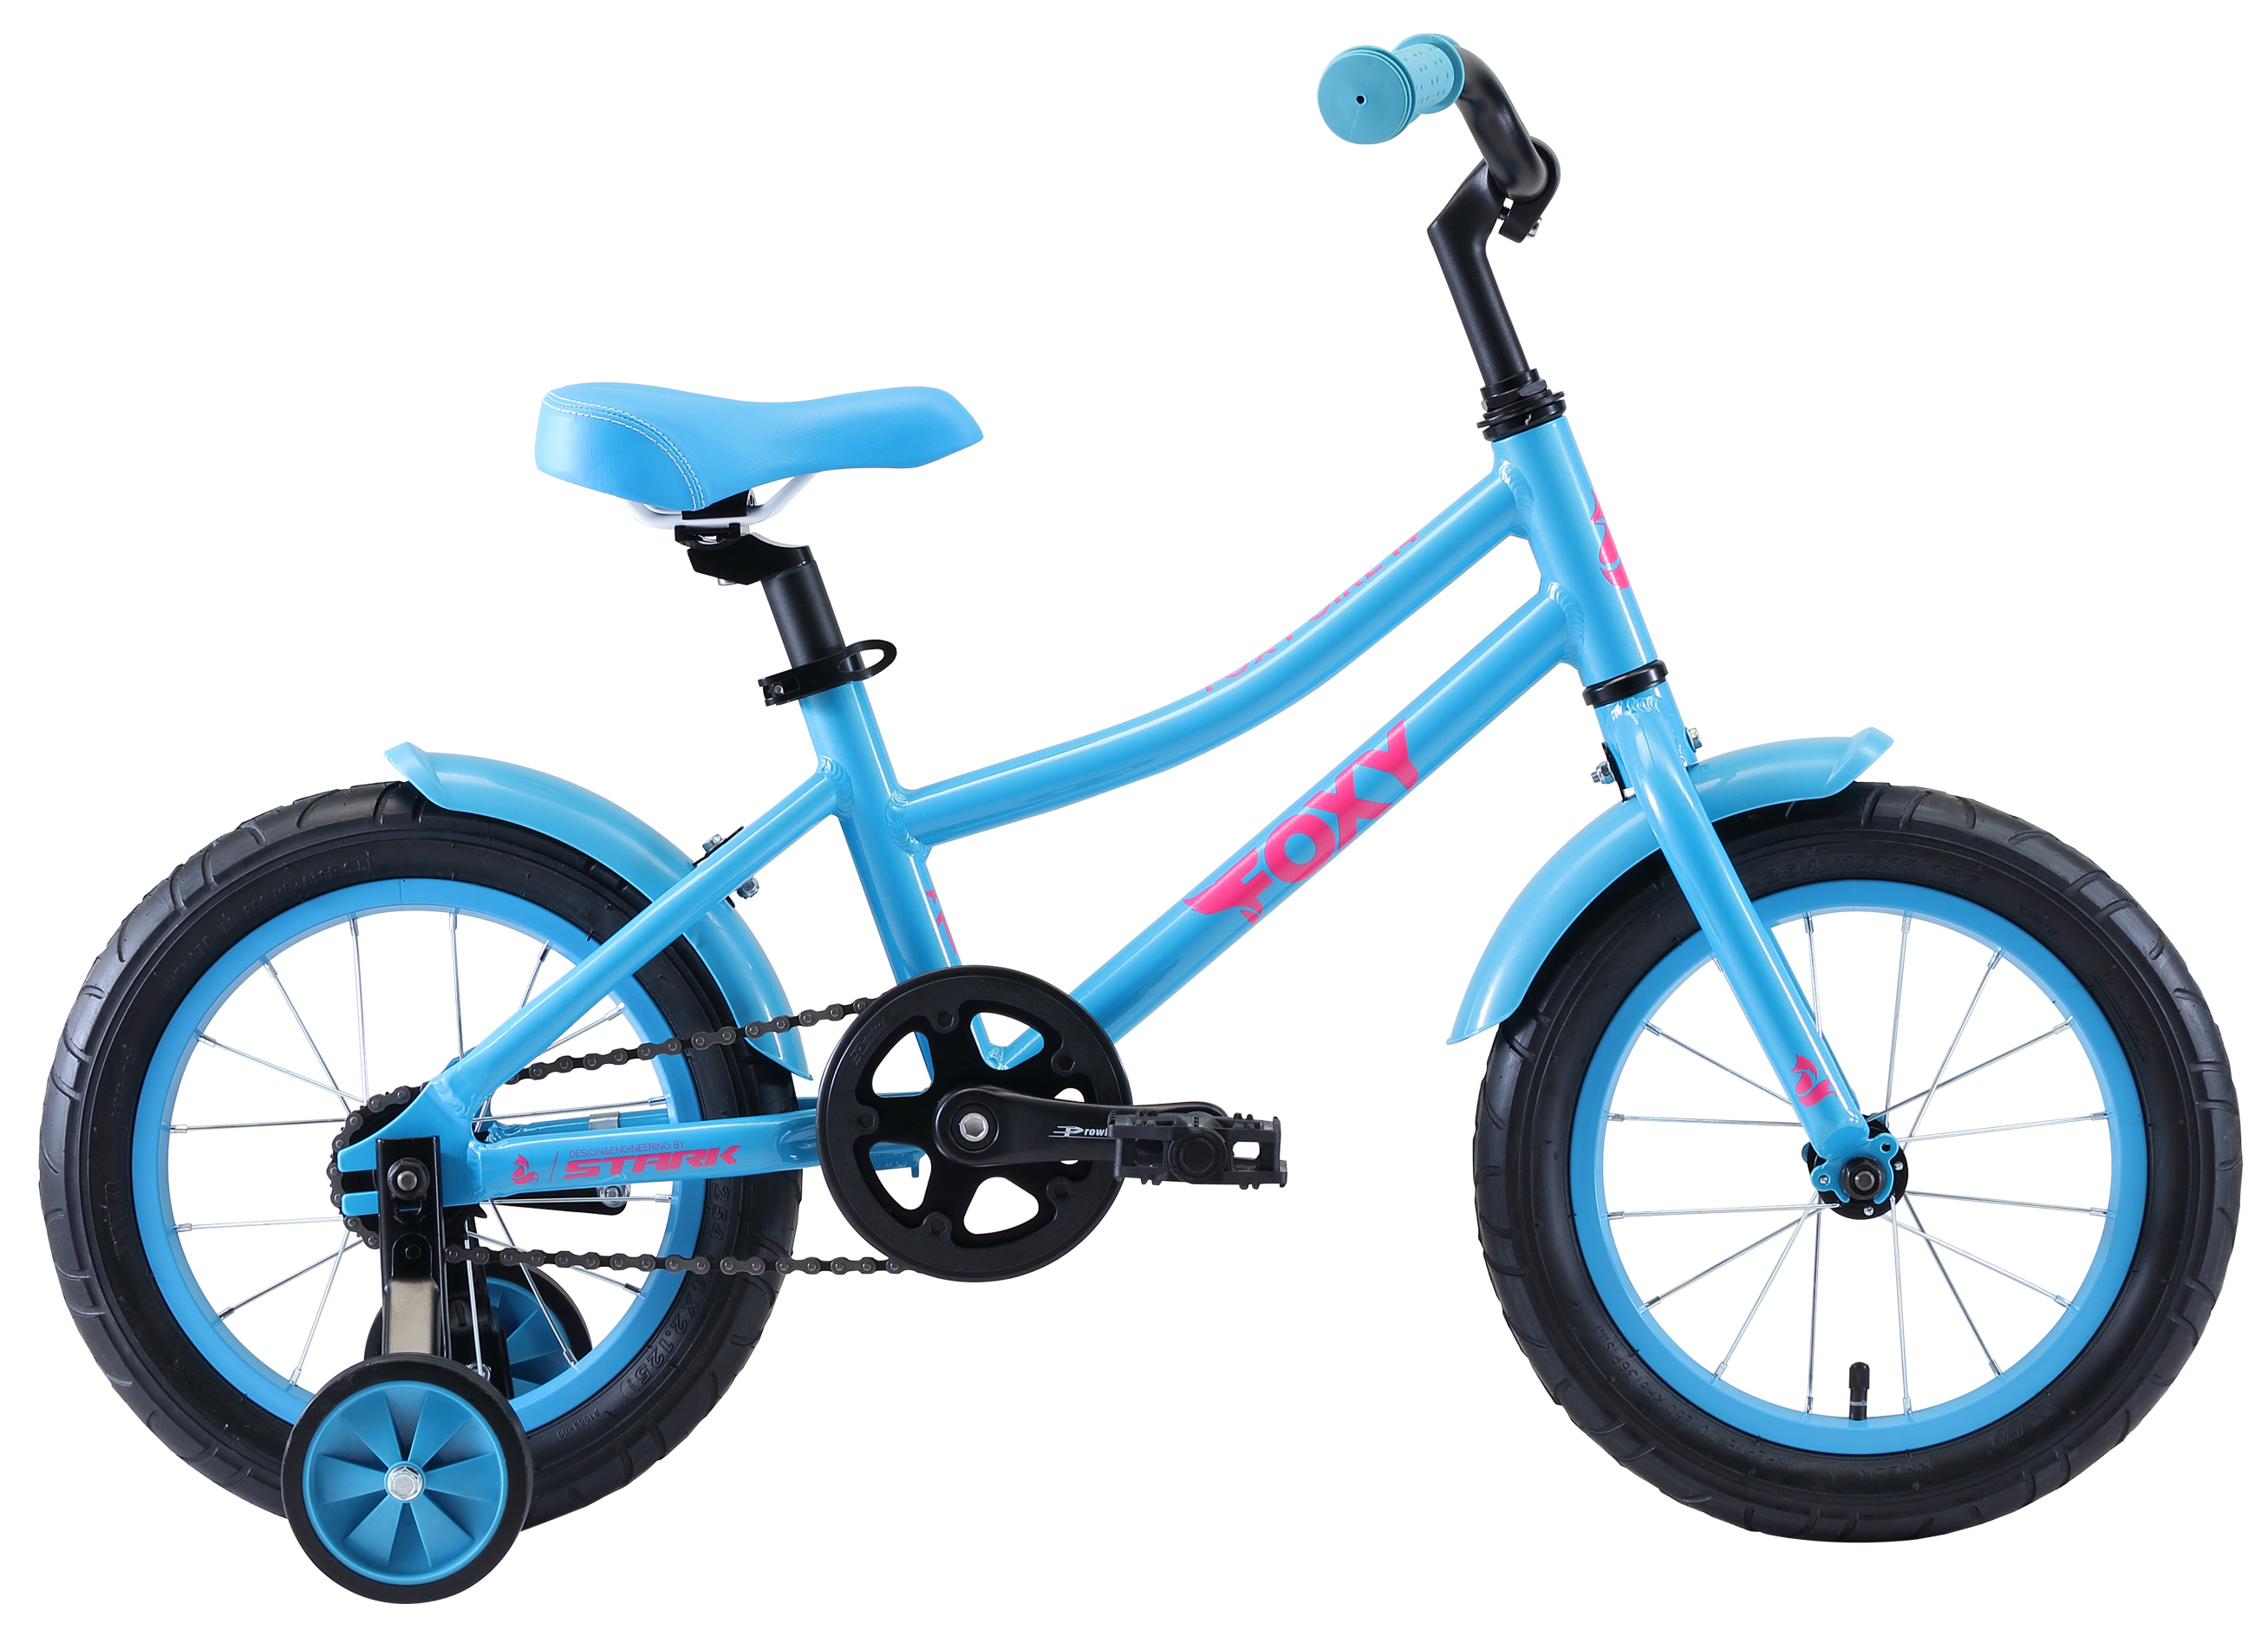  Отзывы о Детском велосипеде Stark Foxy 14 Girl 2020